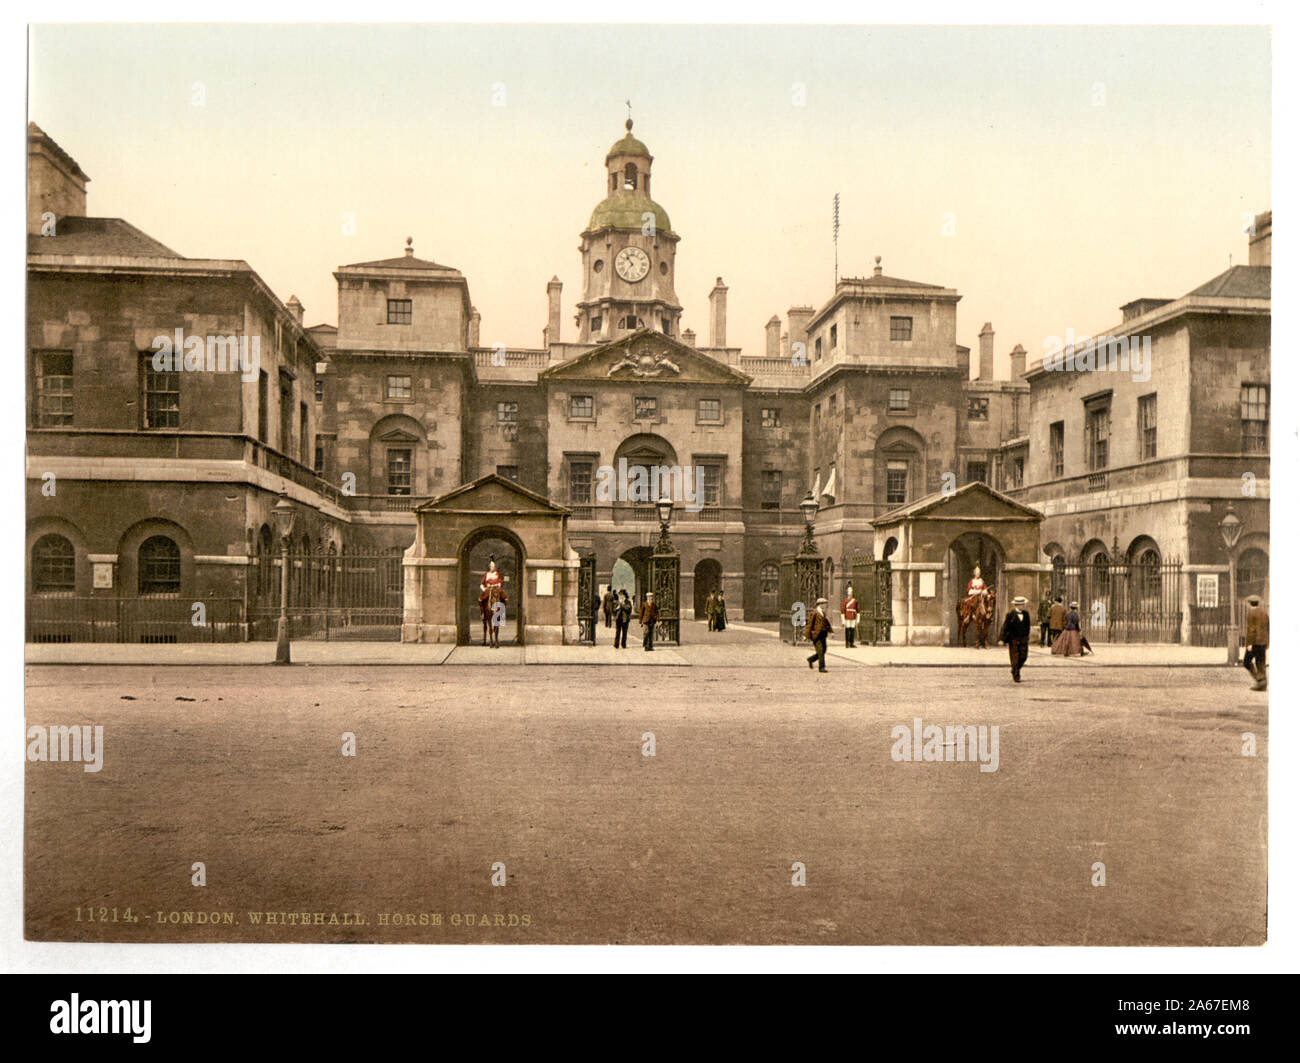 Horse Guards, Whitehall, Londres, Angleterre ; fait partie de : vues sur les îles Britanniques, dans l'Photochrom collection imprimée. ; Banque D'Images